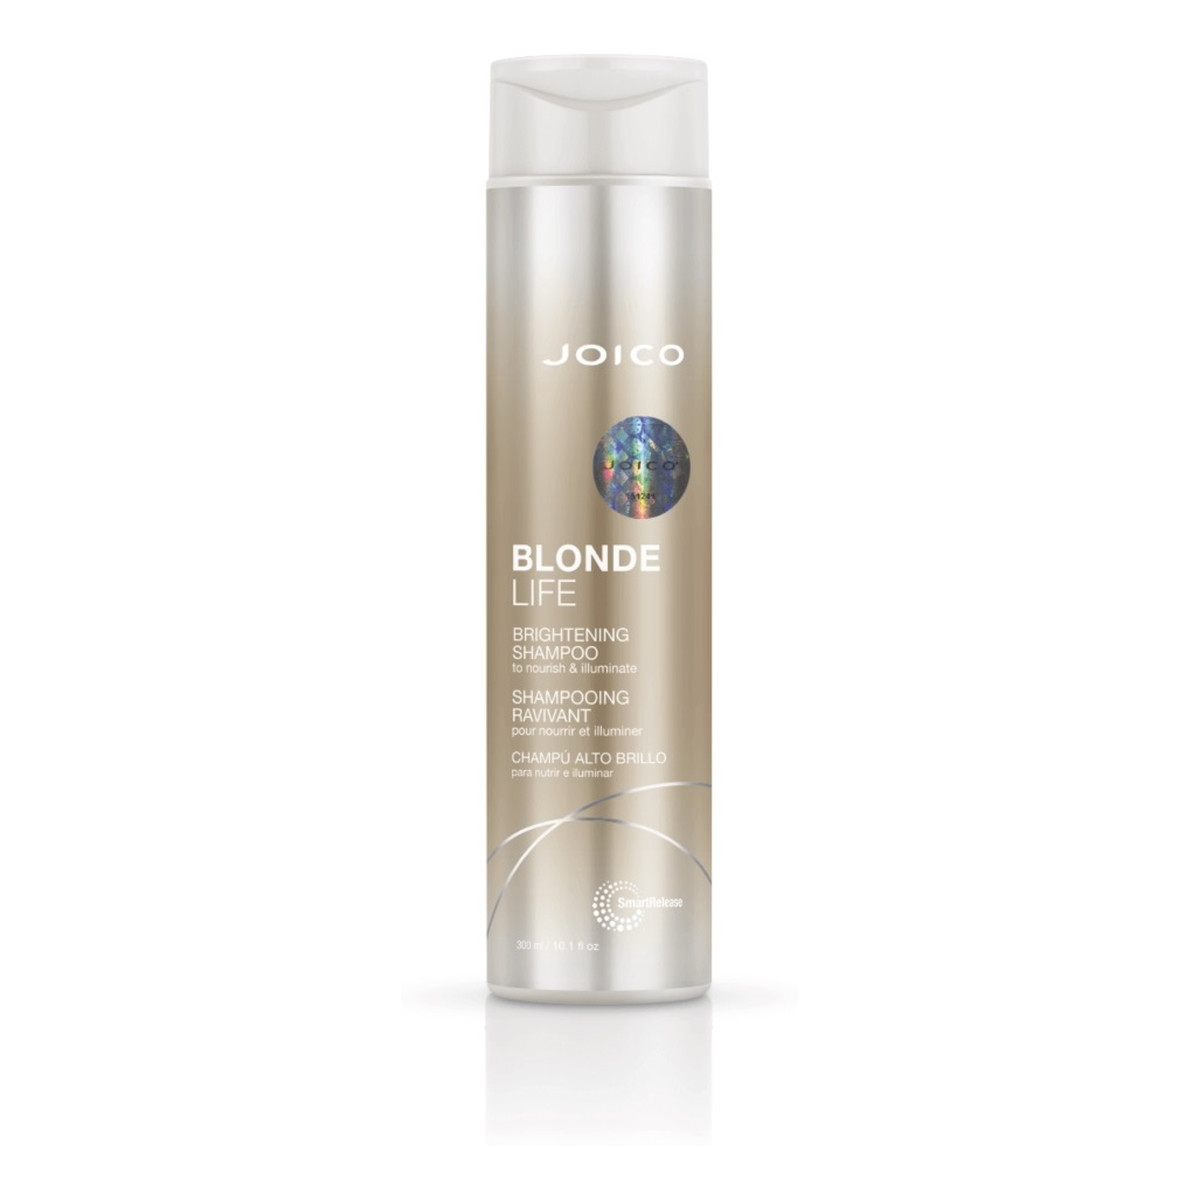 Joico Blonde life brightening shampoo szampon do włosów blond 300ml